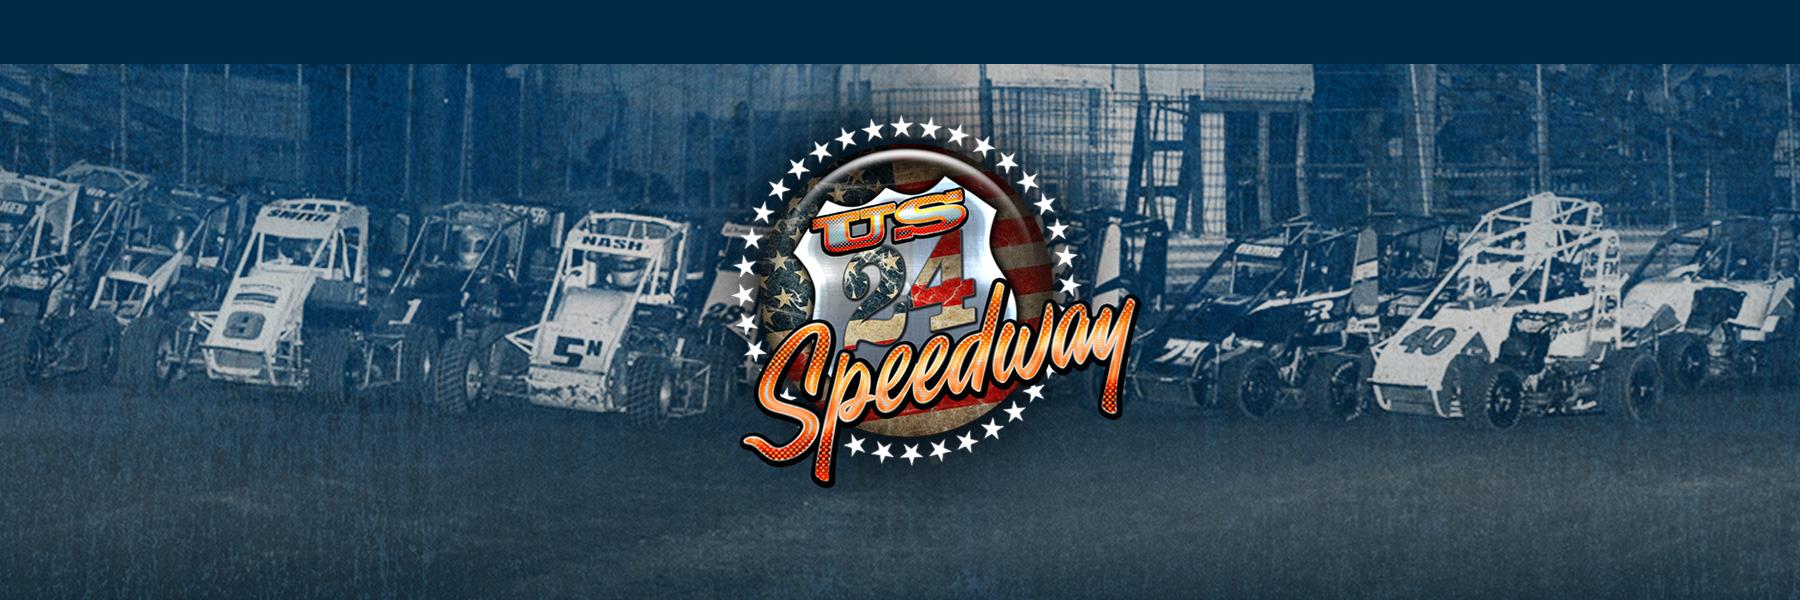 5/21/2022 - US 24 Speedway